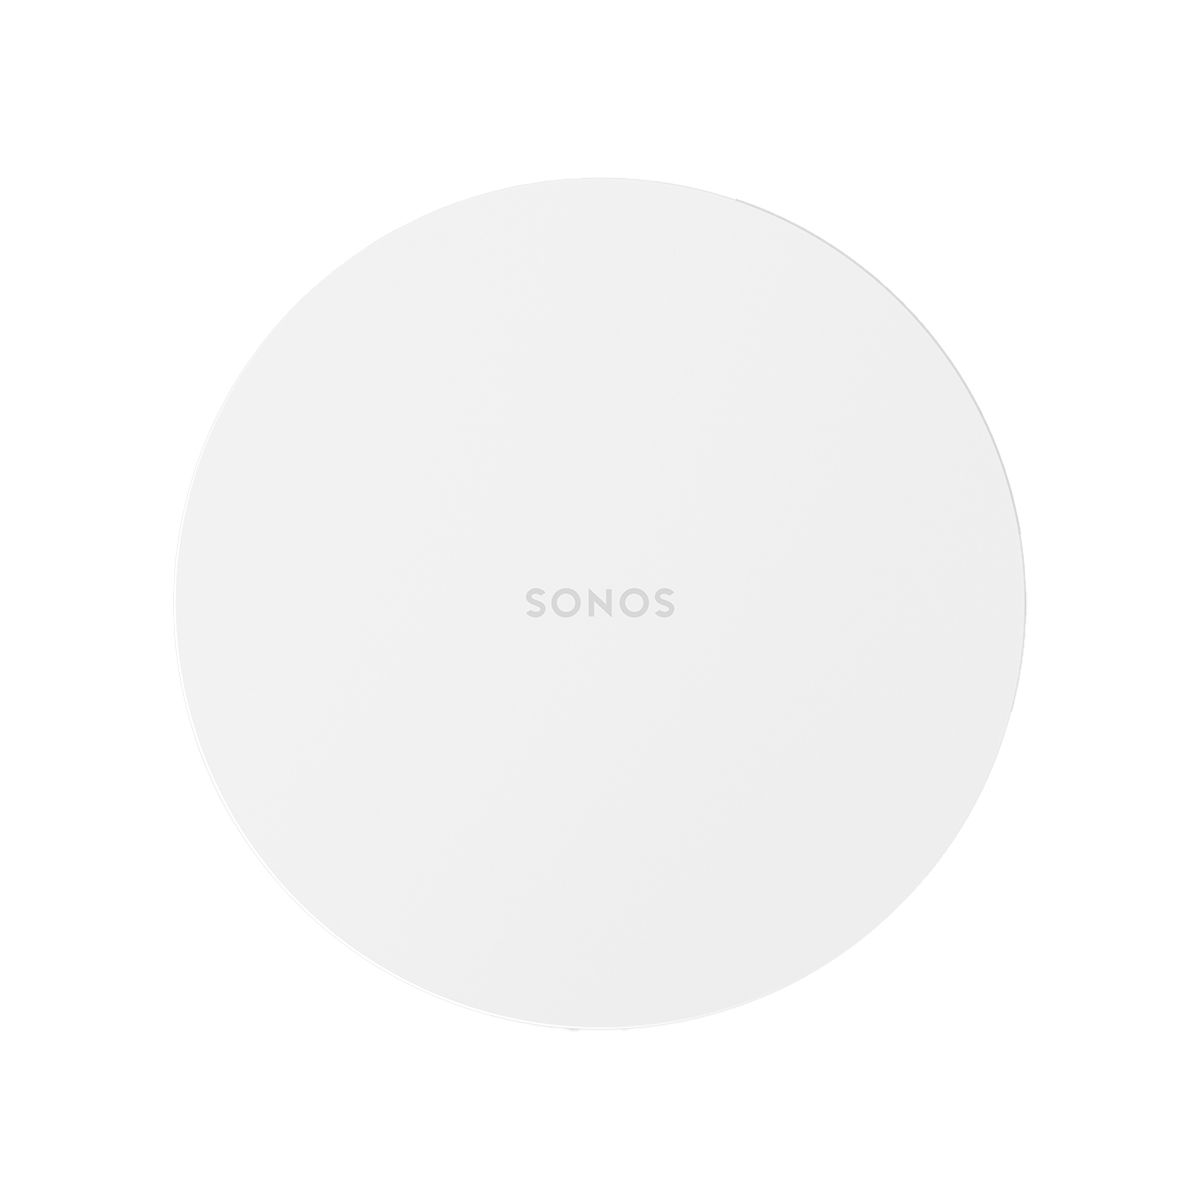 Sonos Sub Mini - White - top view